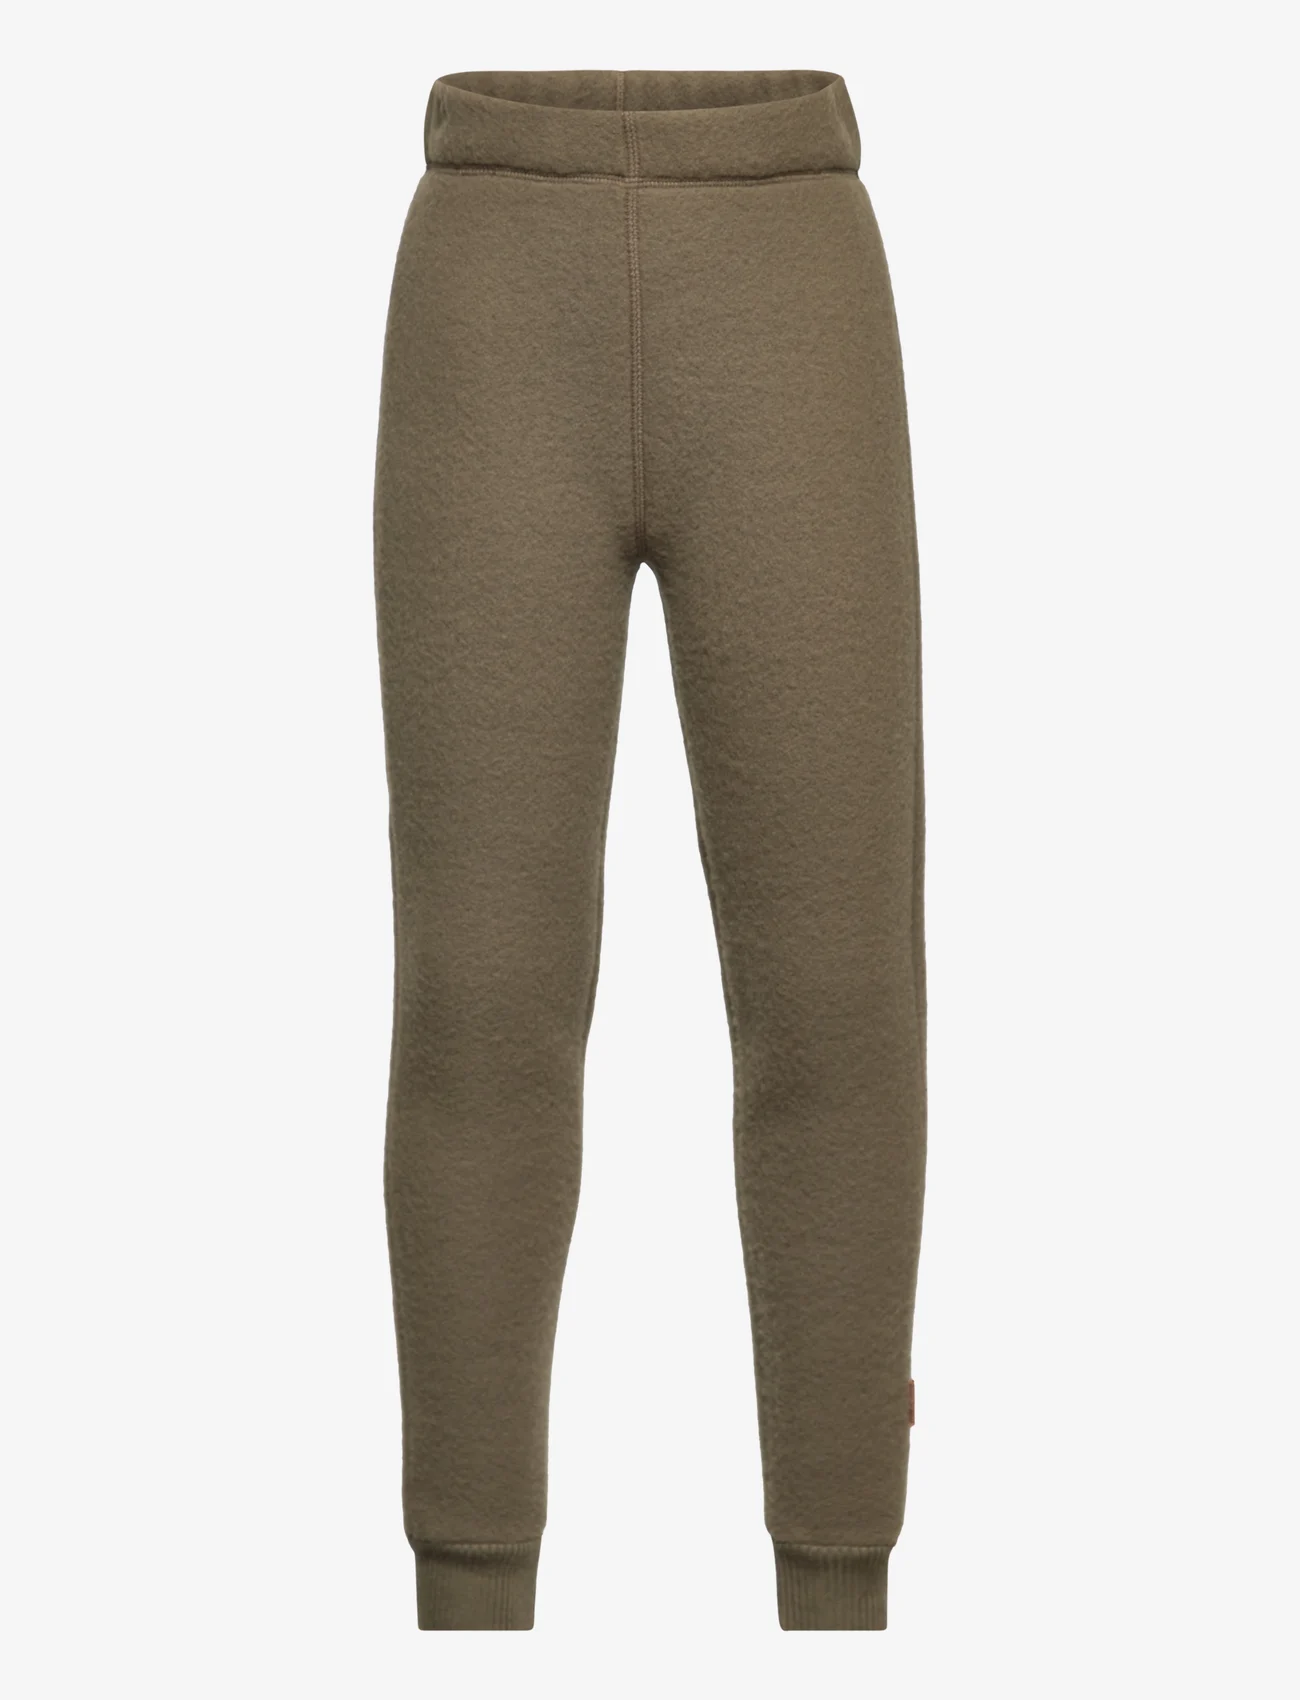 mikk-line - WOOL Pants - fleece broeken - beech - 0